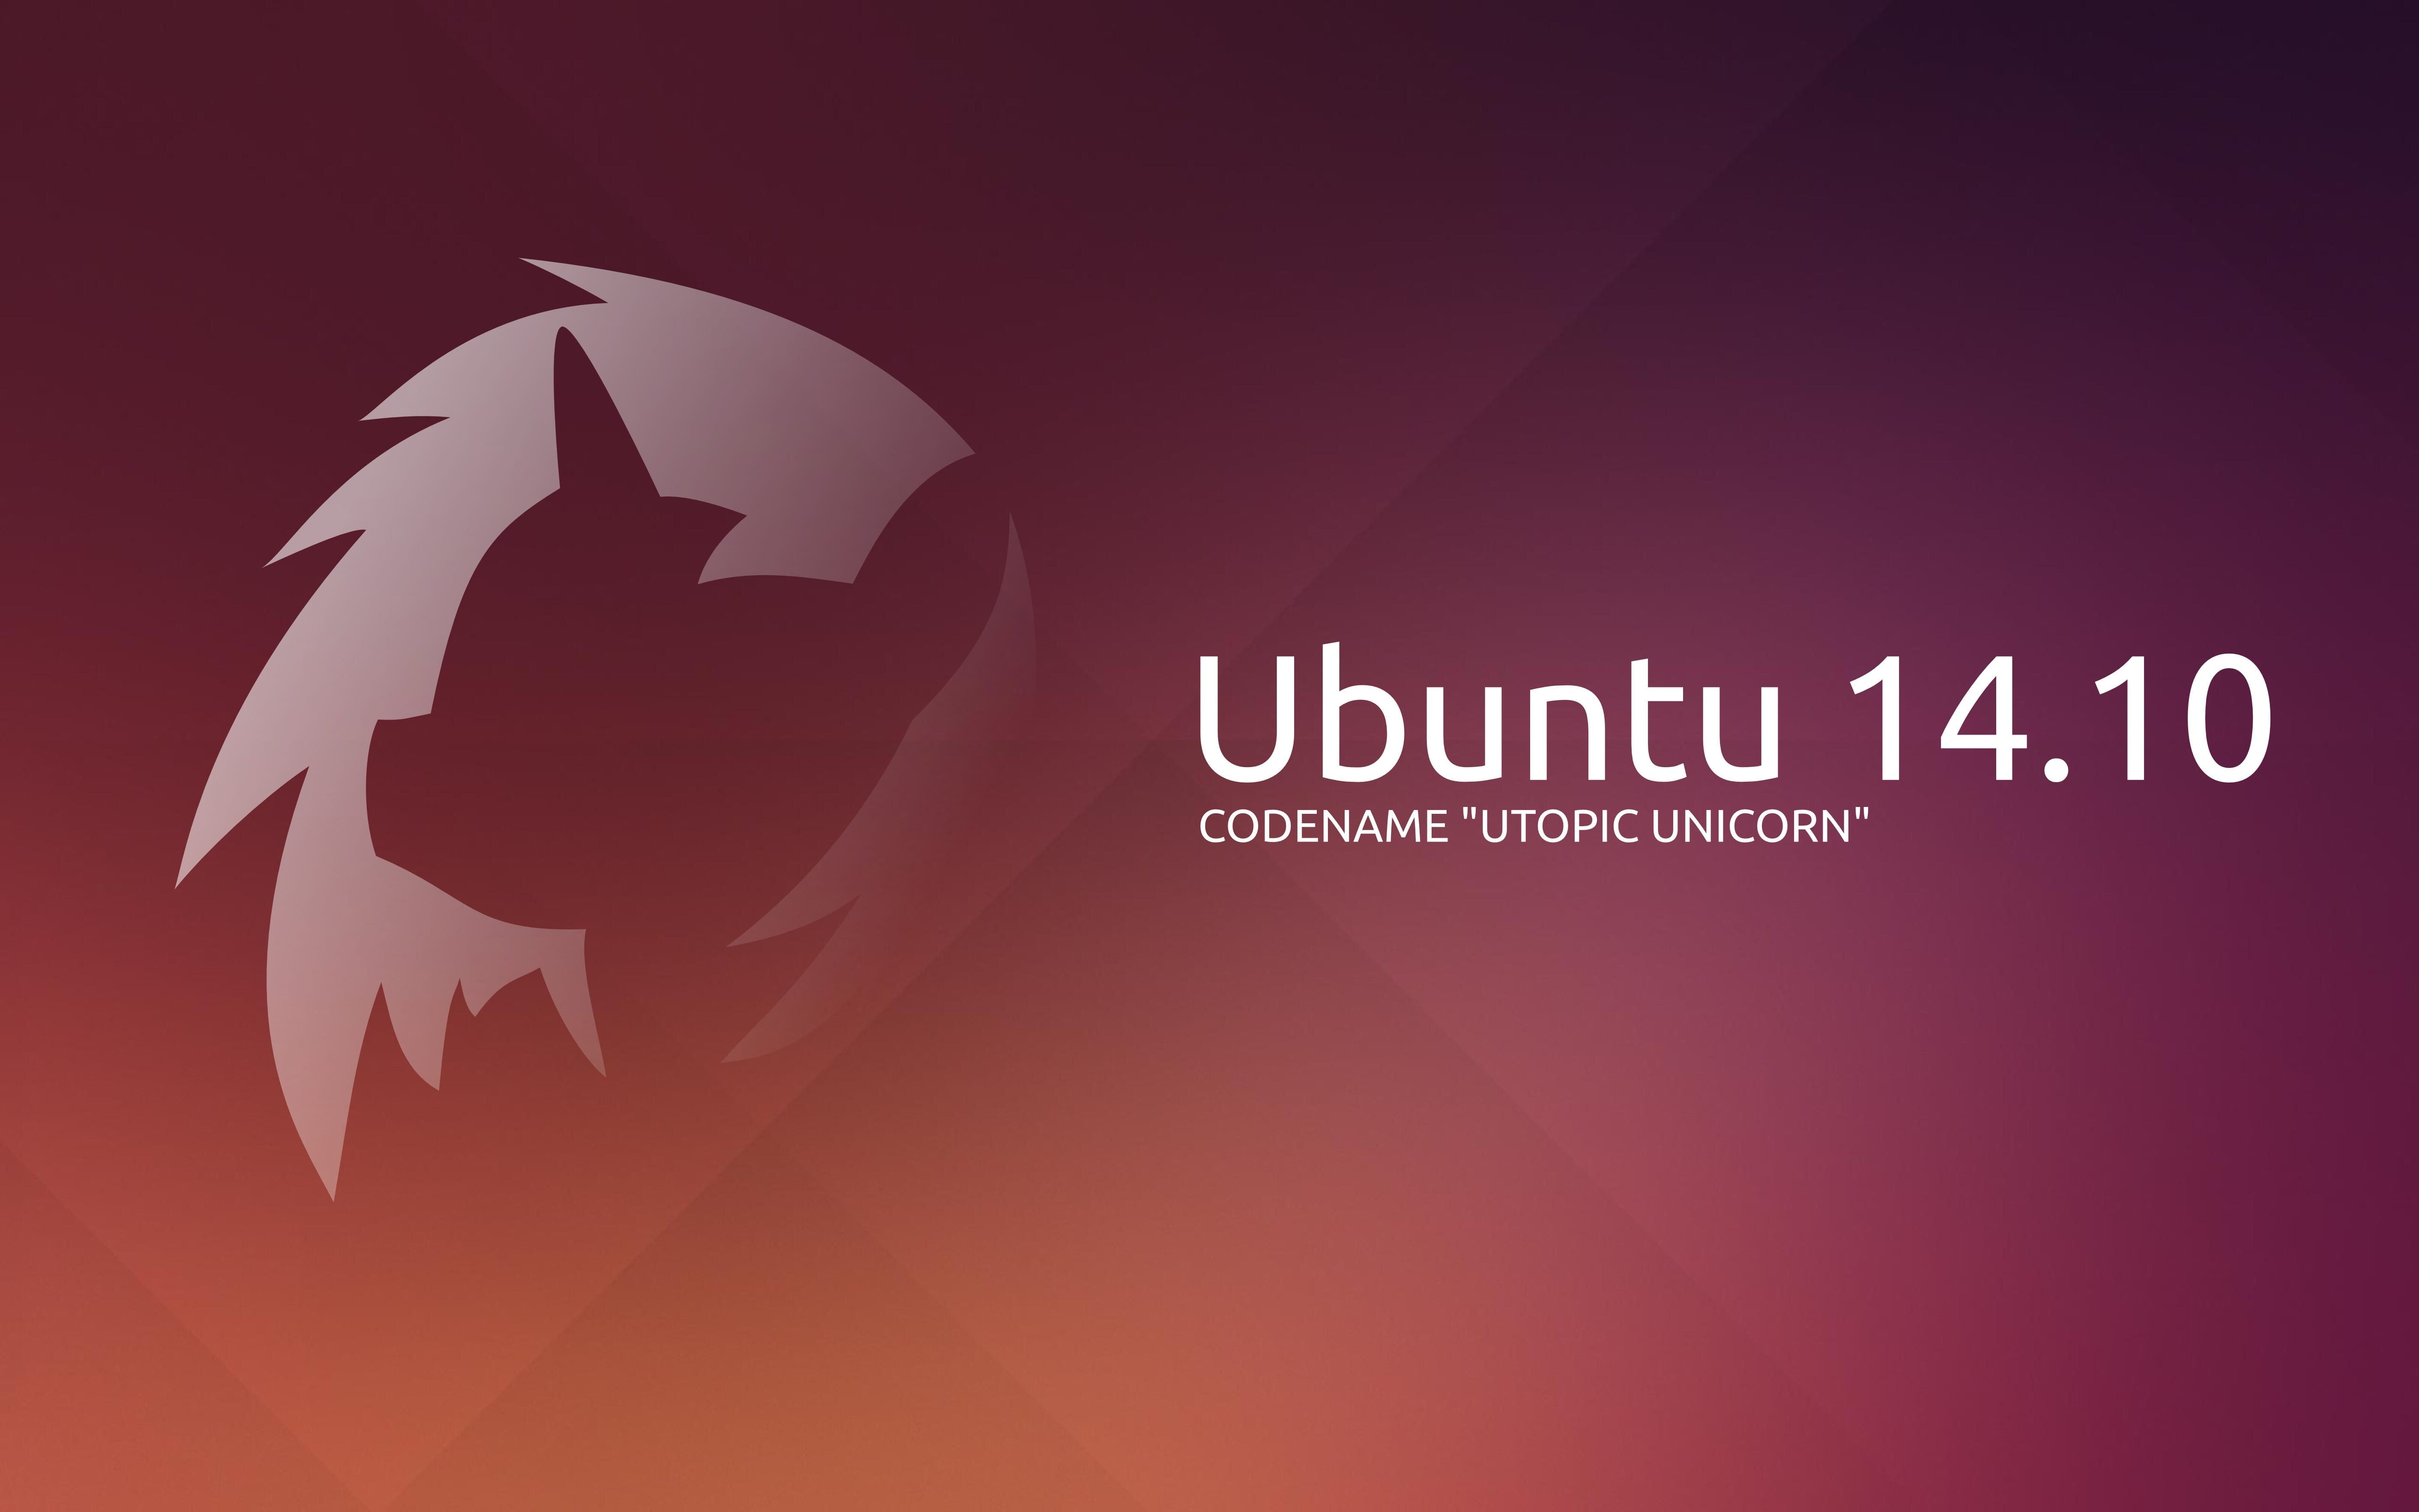 Ubuntu 14.10: Come aggiornare all’ultima versione della nota distribuzione Linux